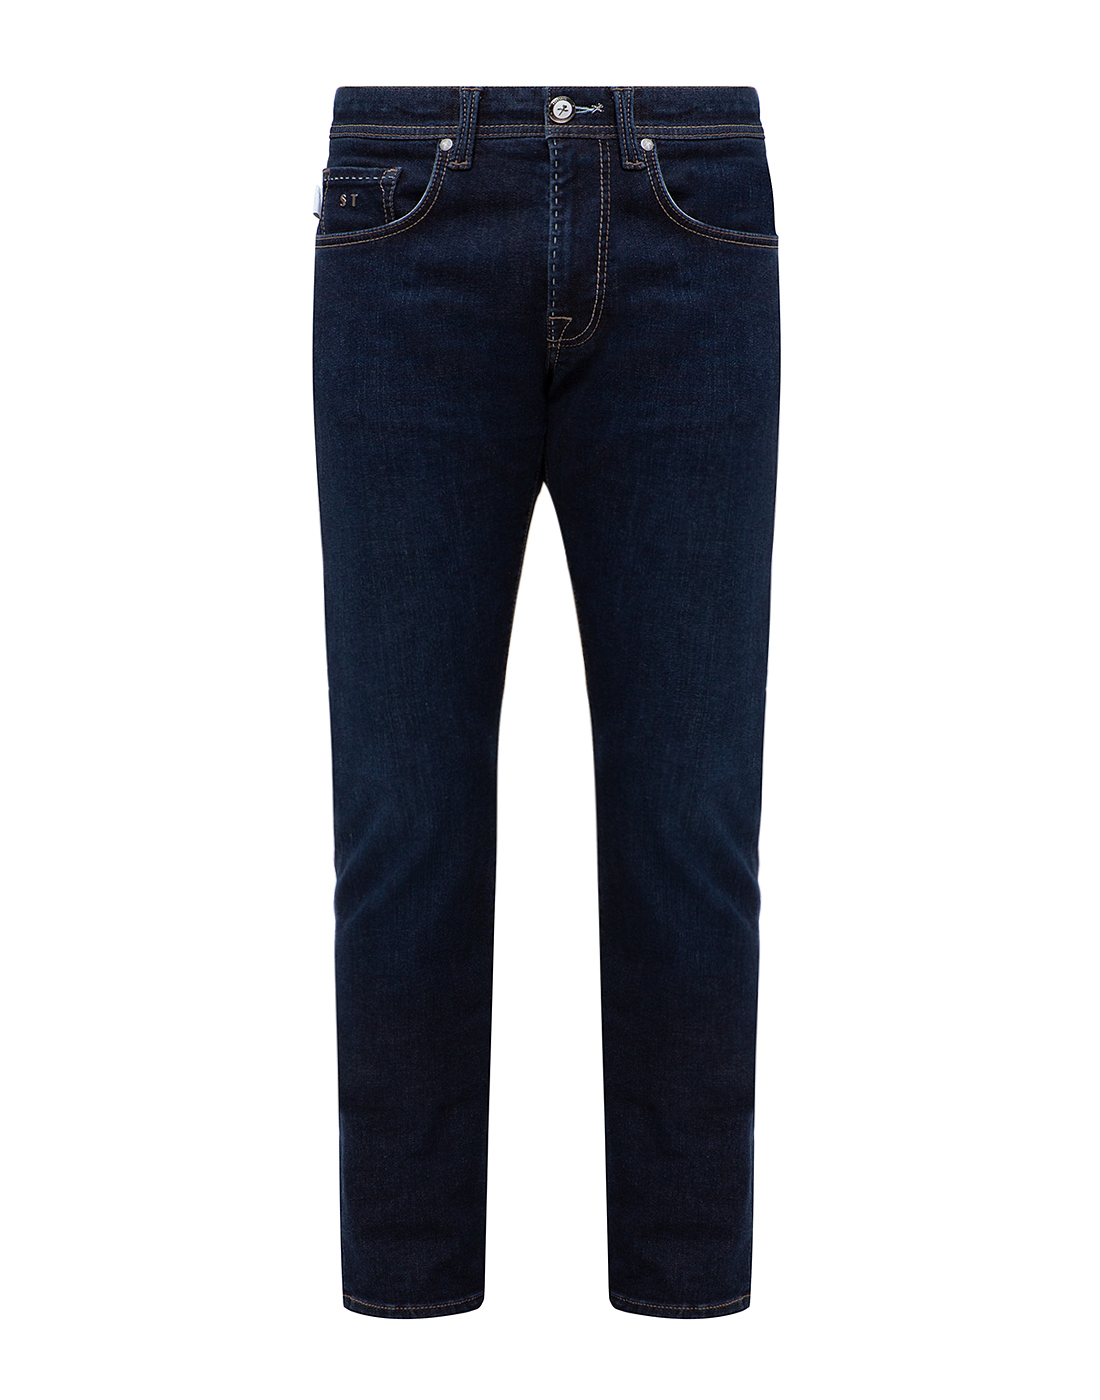 Мужские синие джинсы Tramarossa SD358/9I02-1